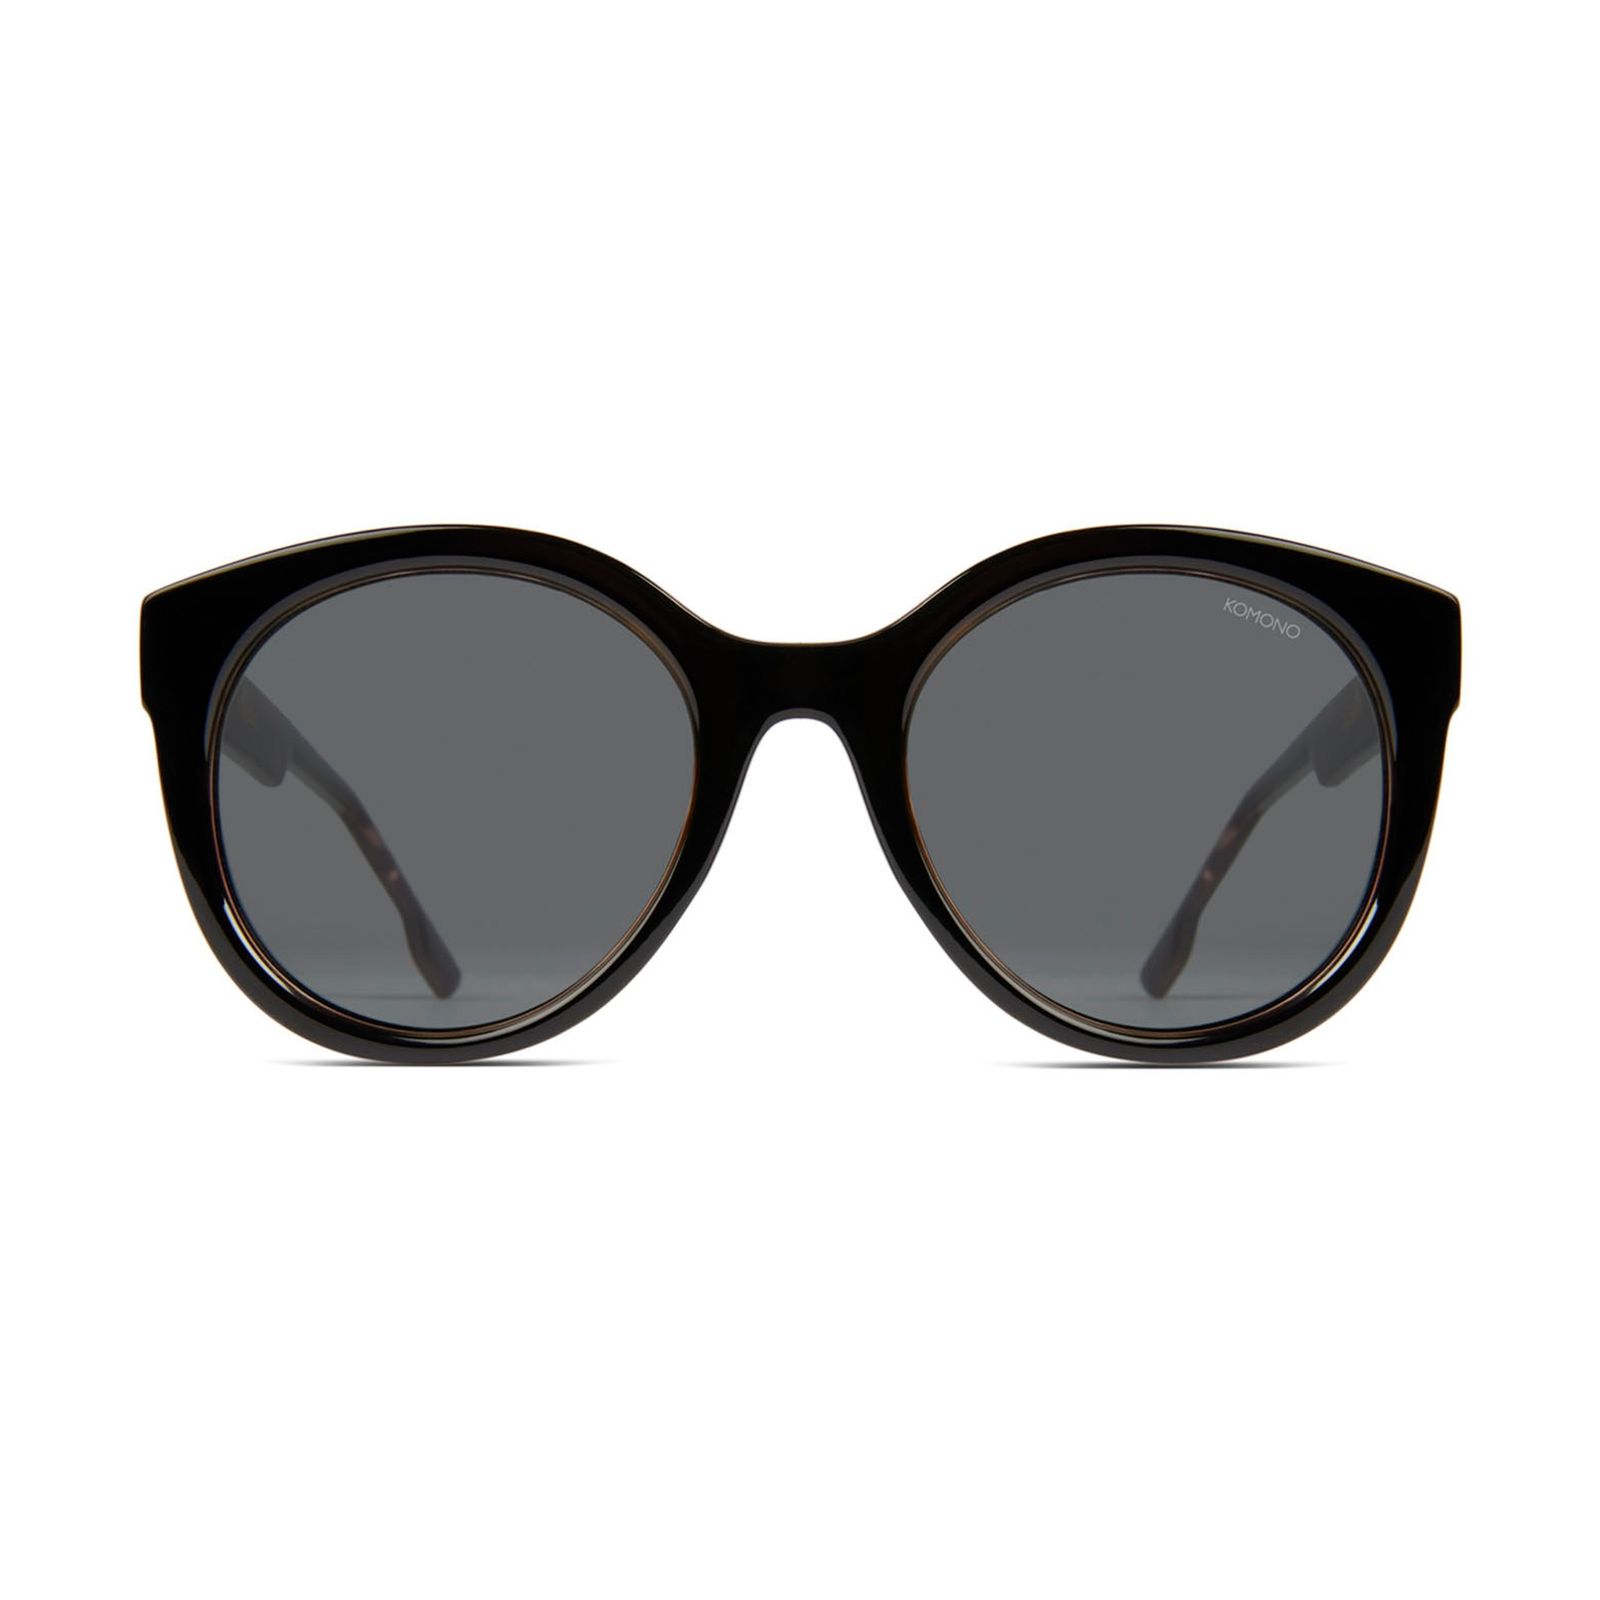 عینک آفتابی زنانه کومونو سری Ellis Black Tortoise مدل KOM-S5402 -  - 4